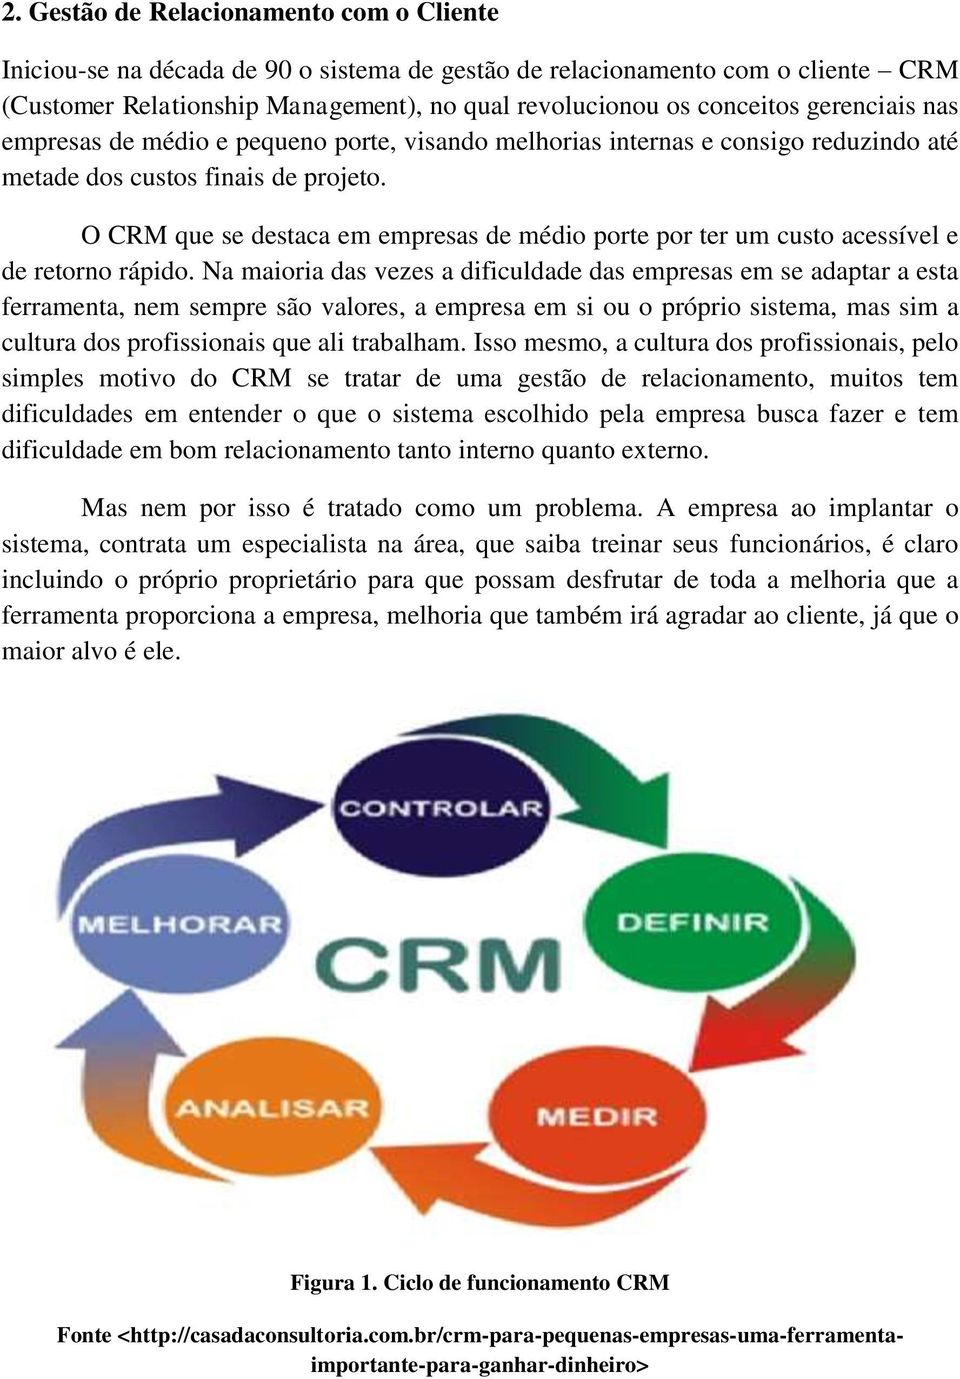 O CRM que se destaca em empresas de médio porte por ter um custo acessível e de retorno rápido.